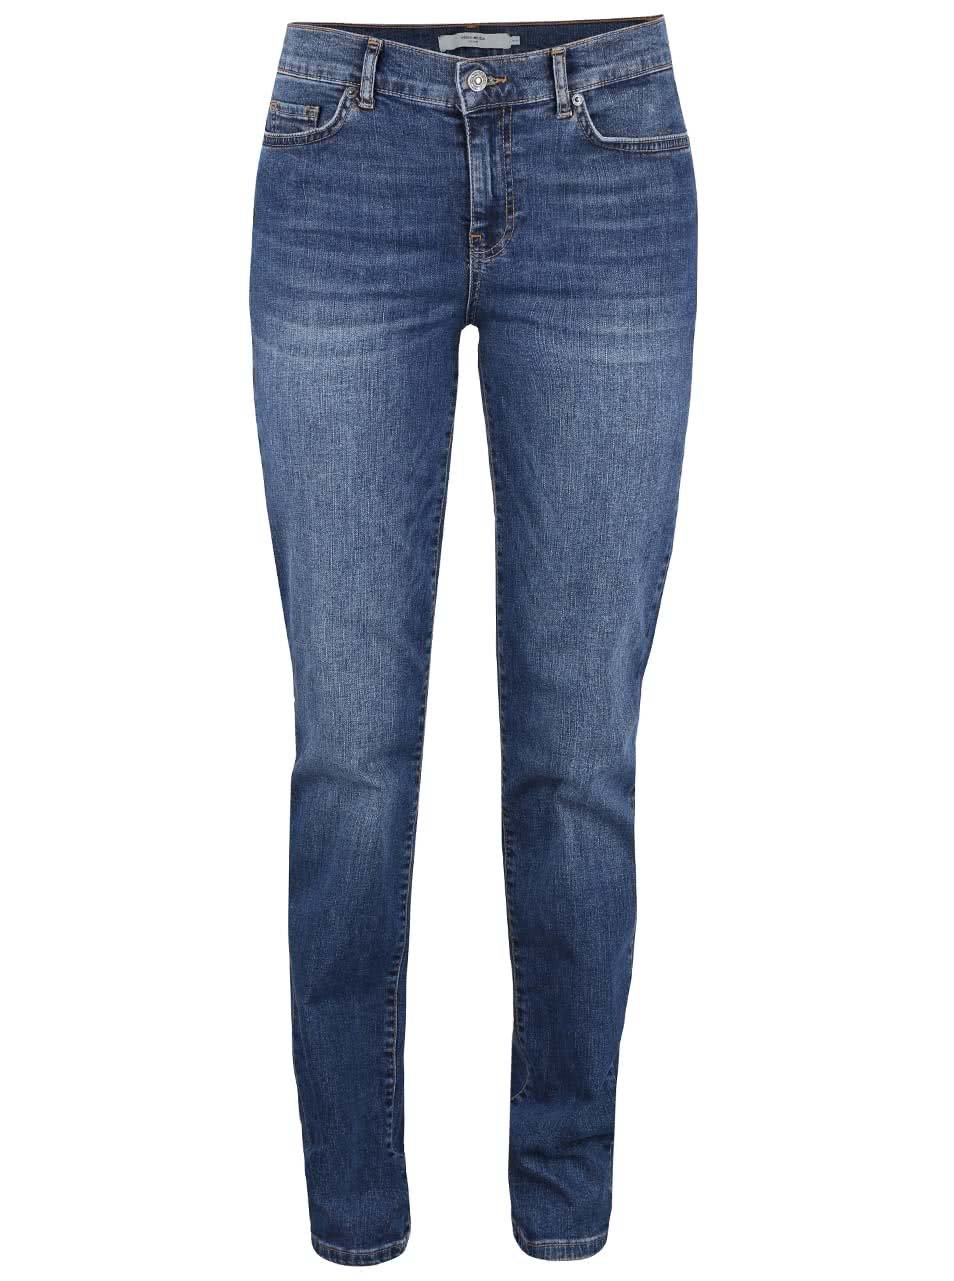 Modré strečové džíny Vero Moda Fifteen